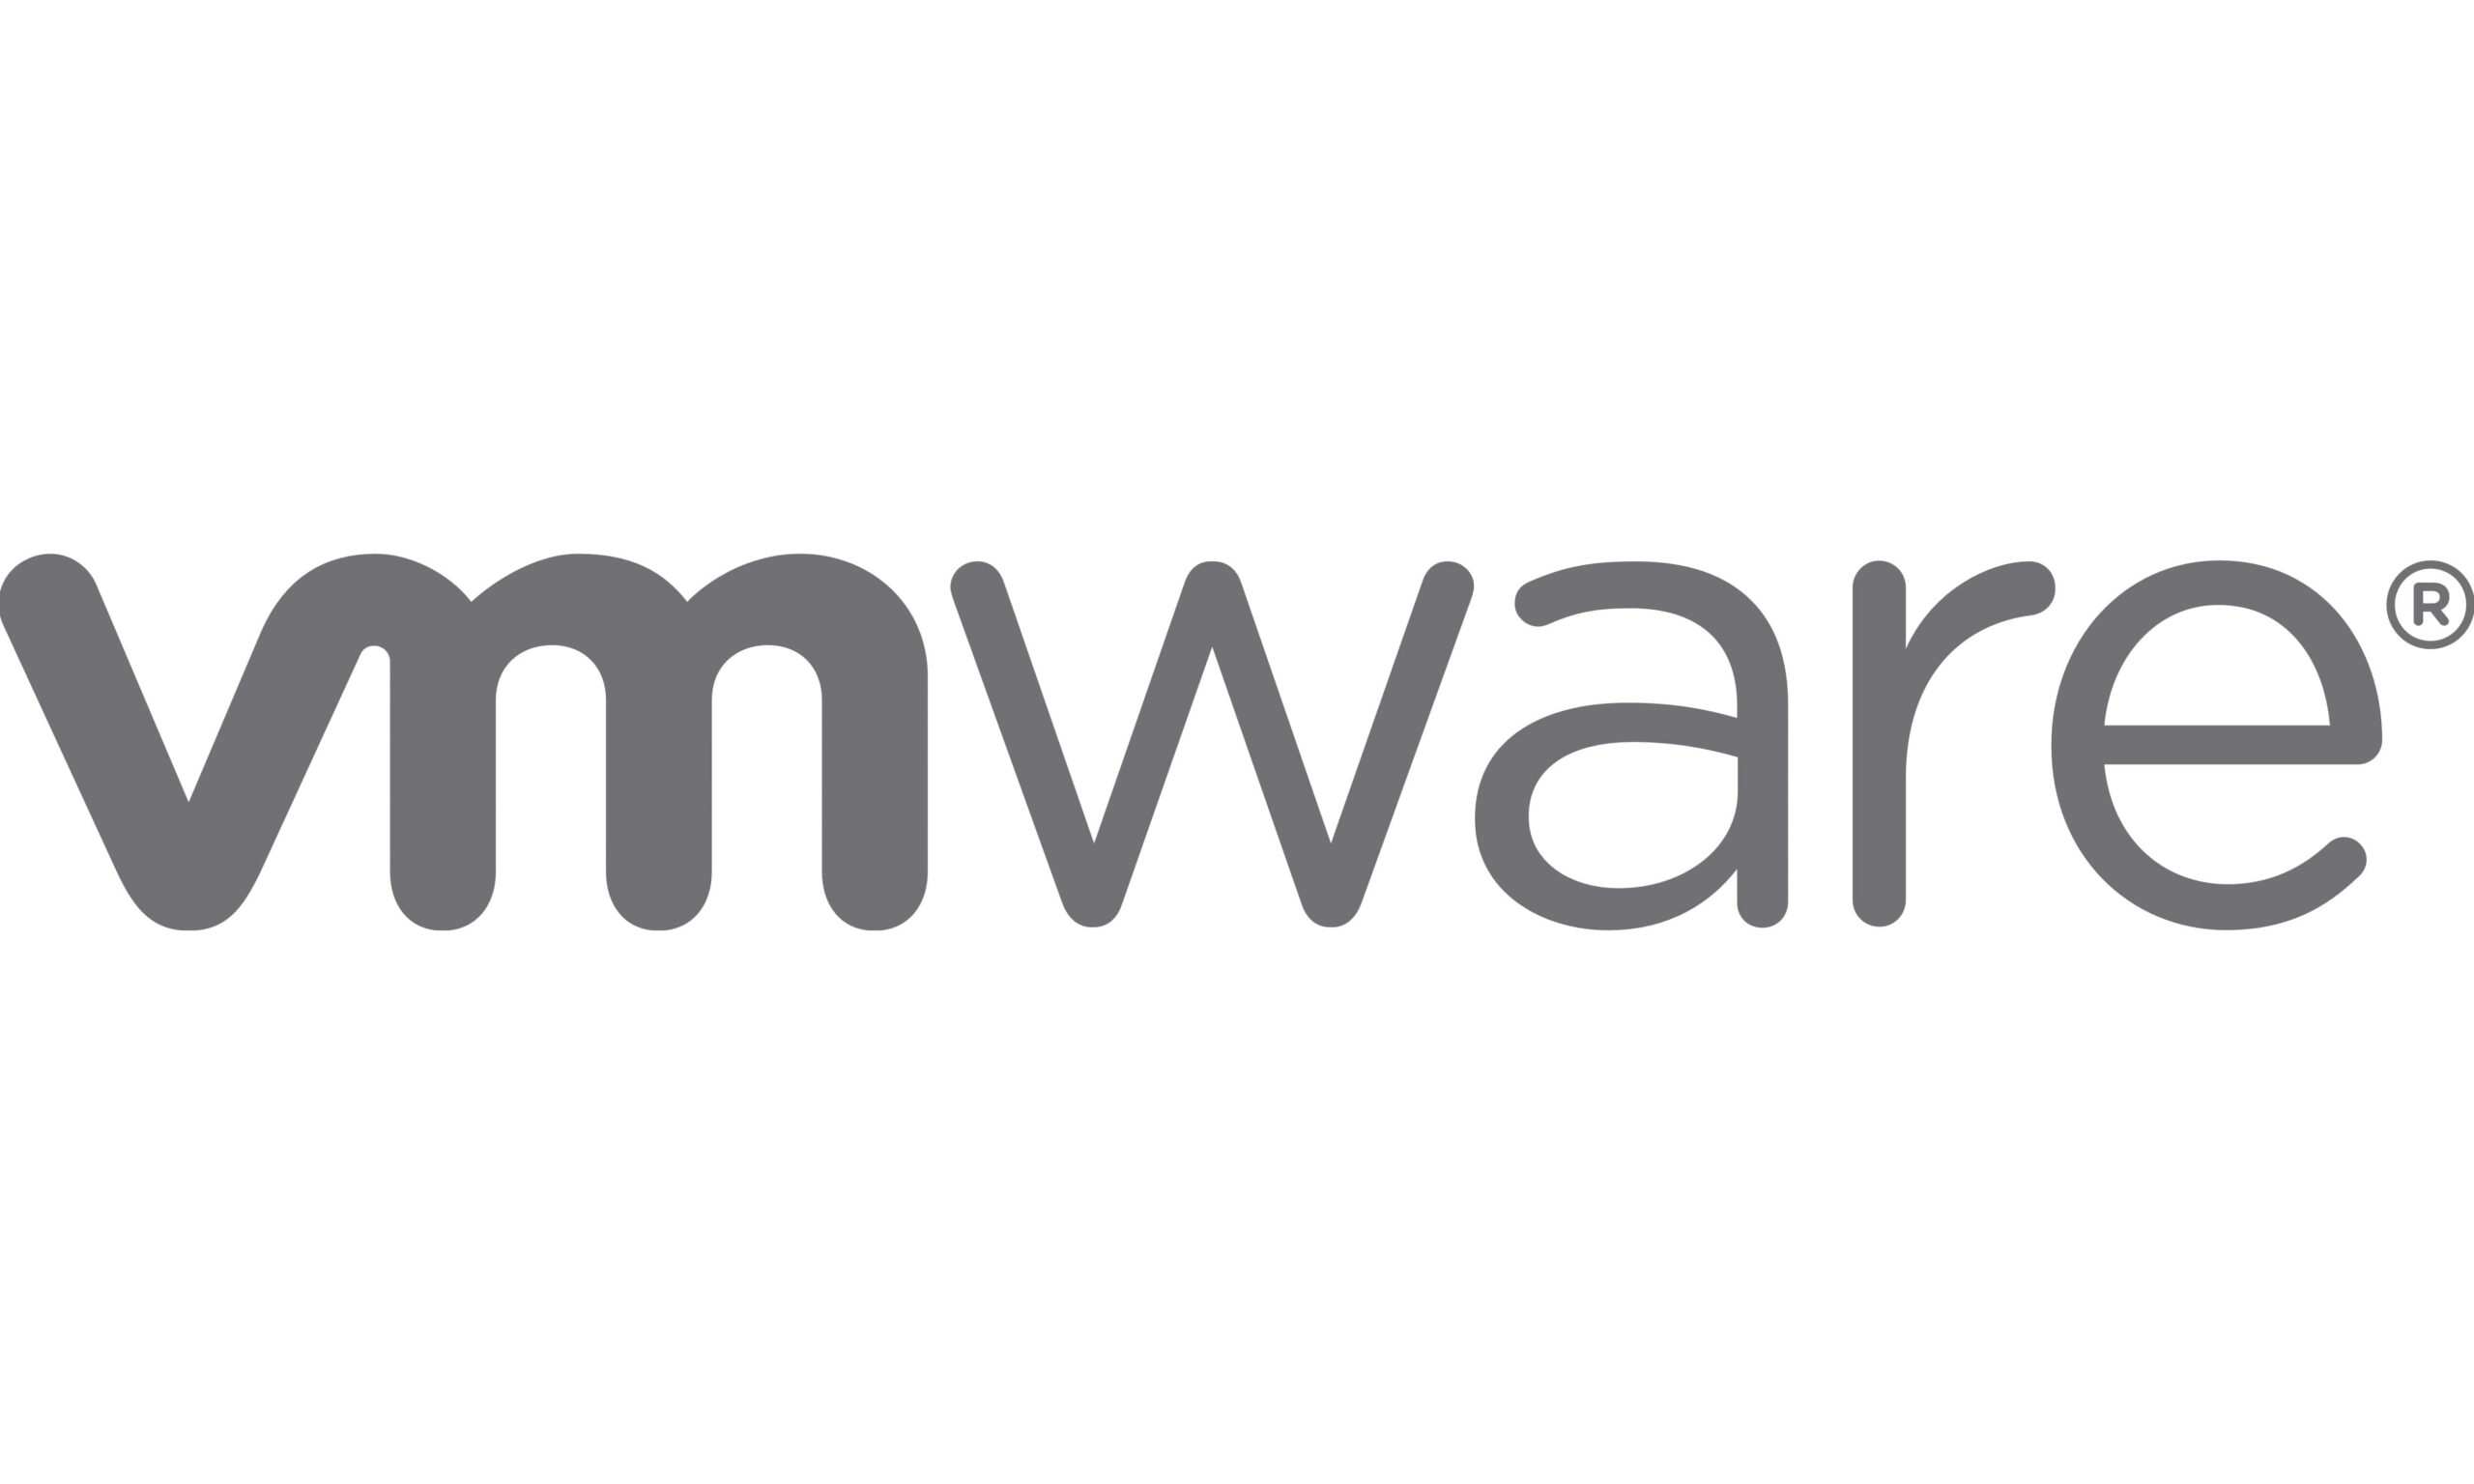 https://stadt-bremerhaven.de/wp-content/uploads/2021/04/VMware-logo-scaled.jpg